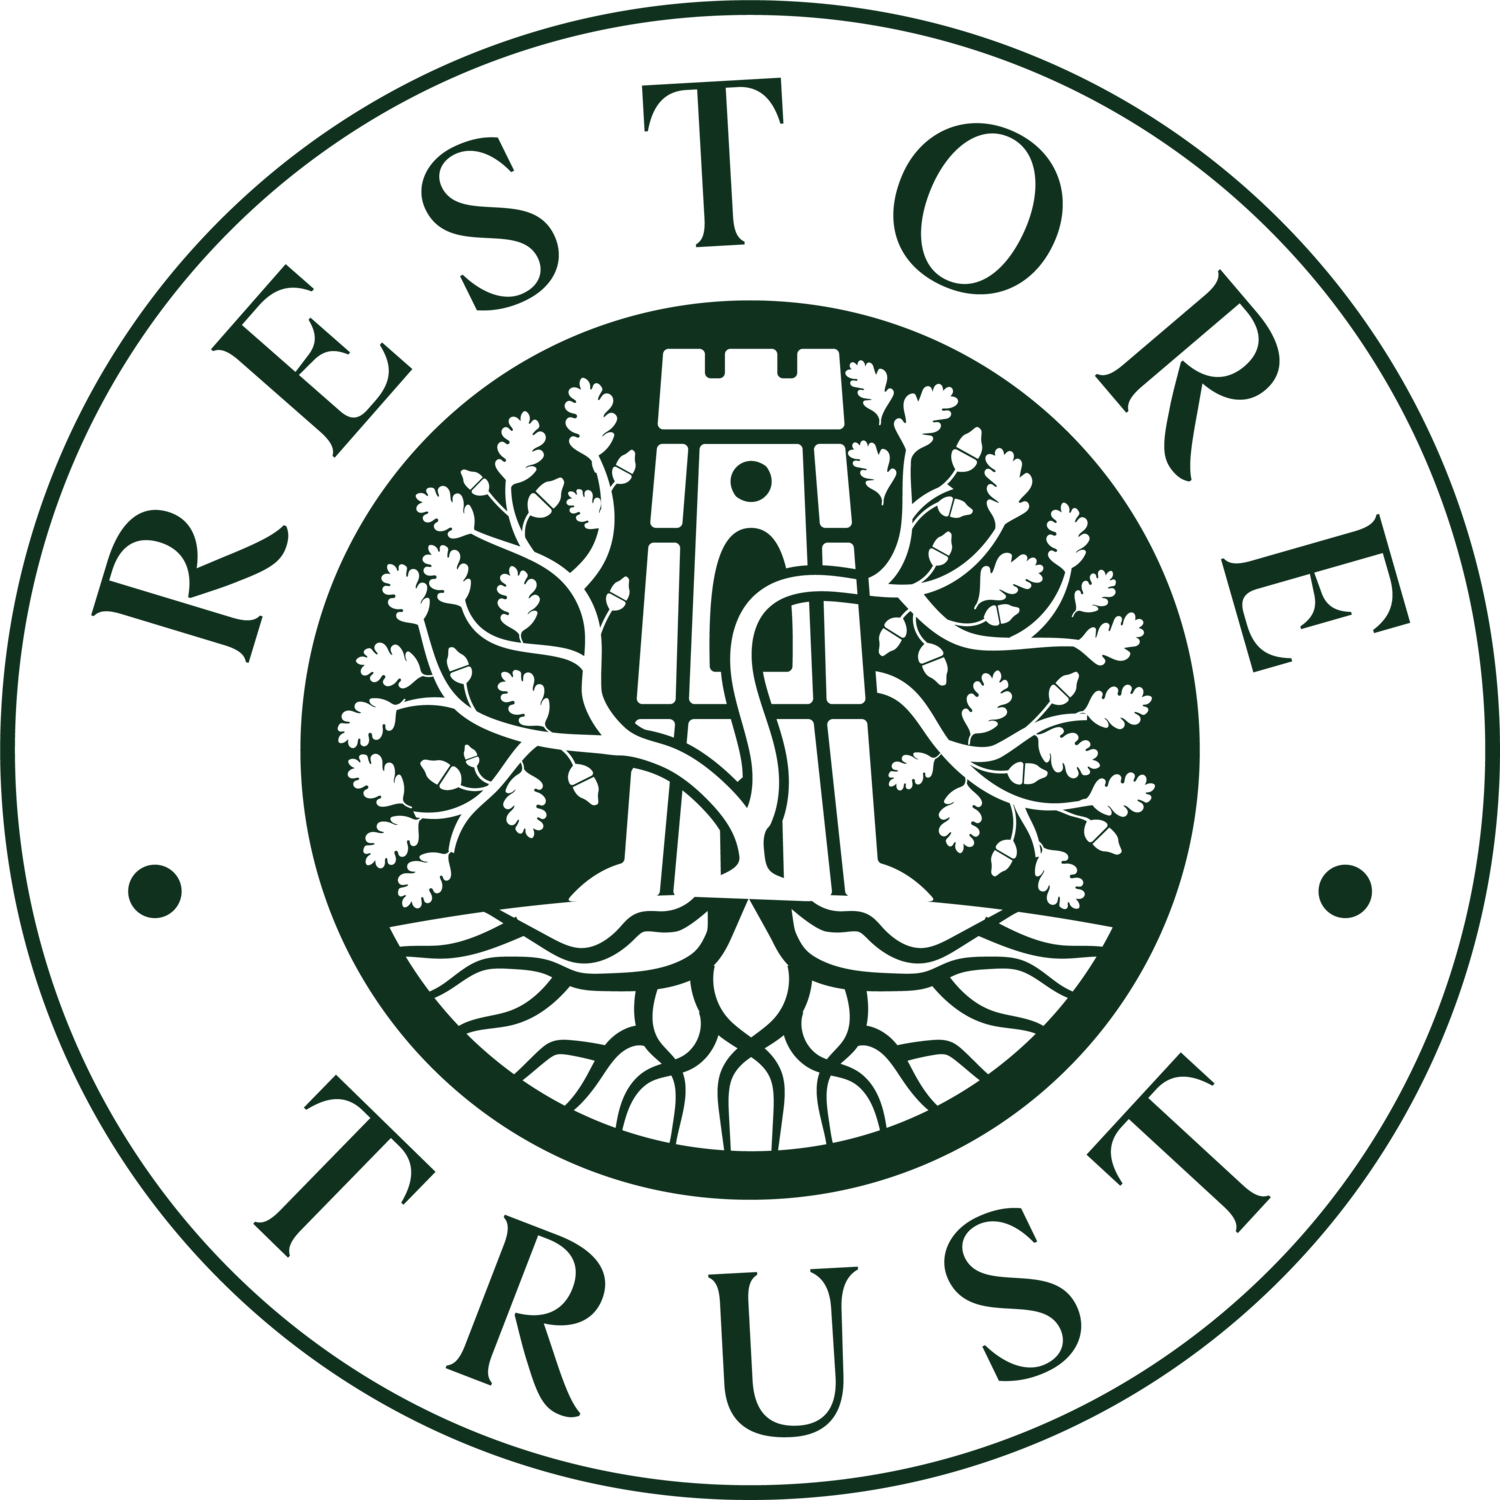 Restore Trust